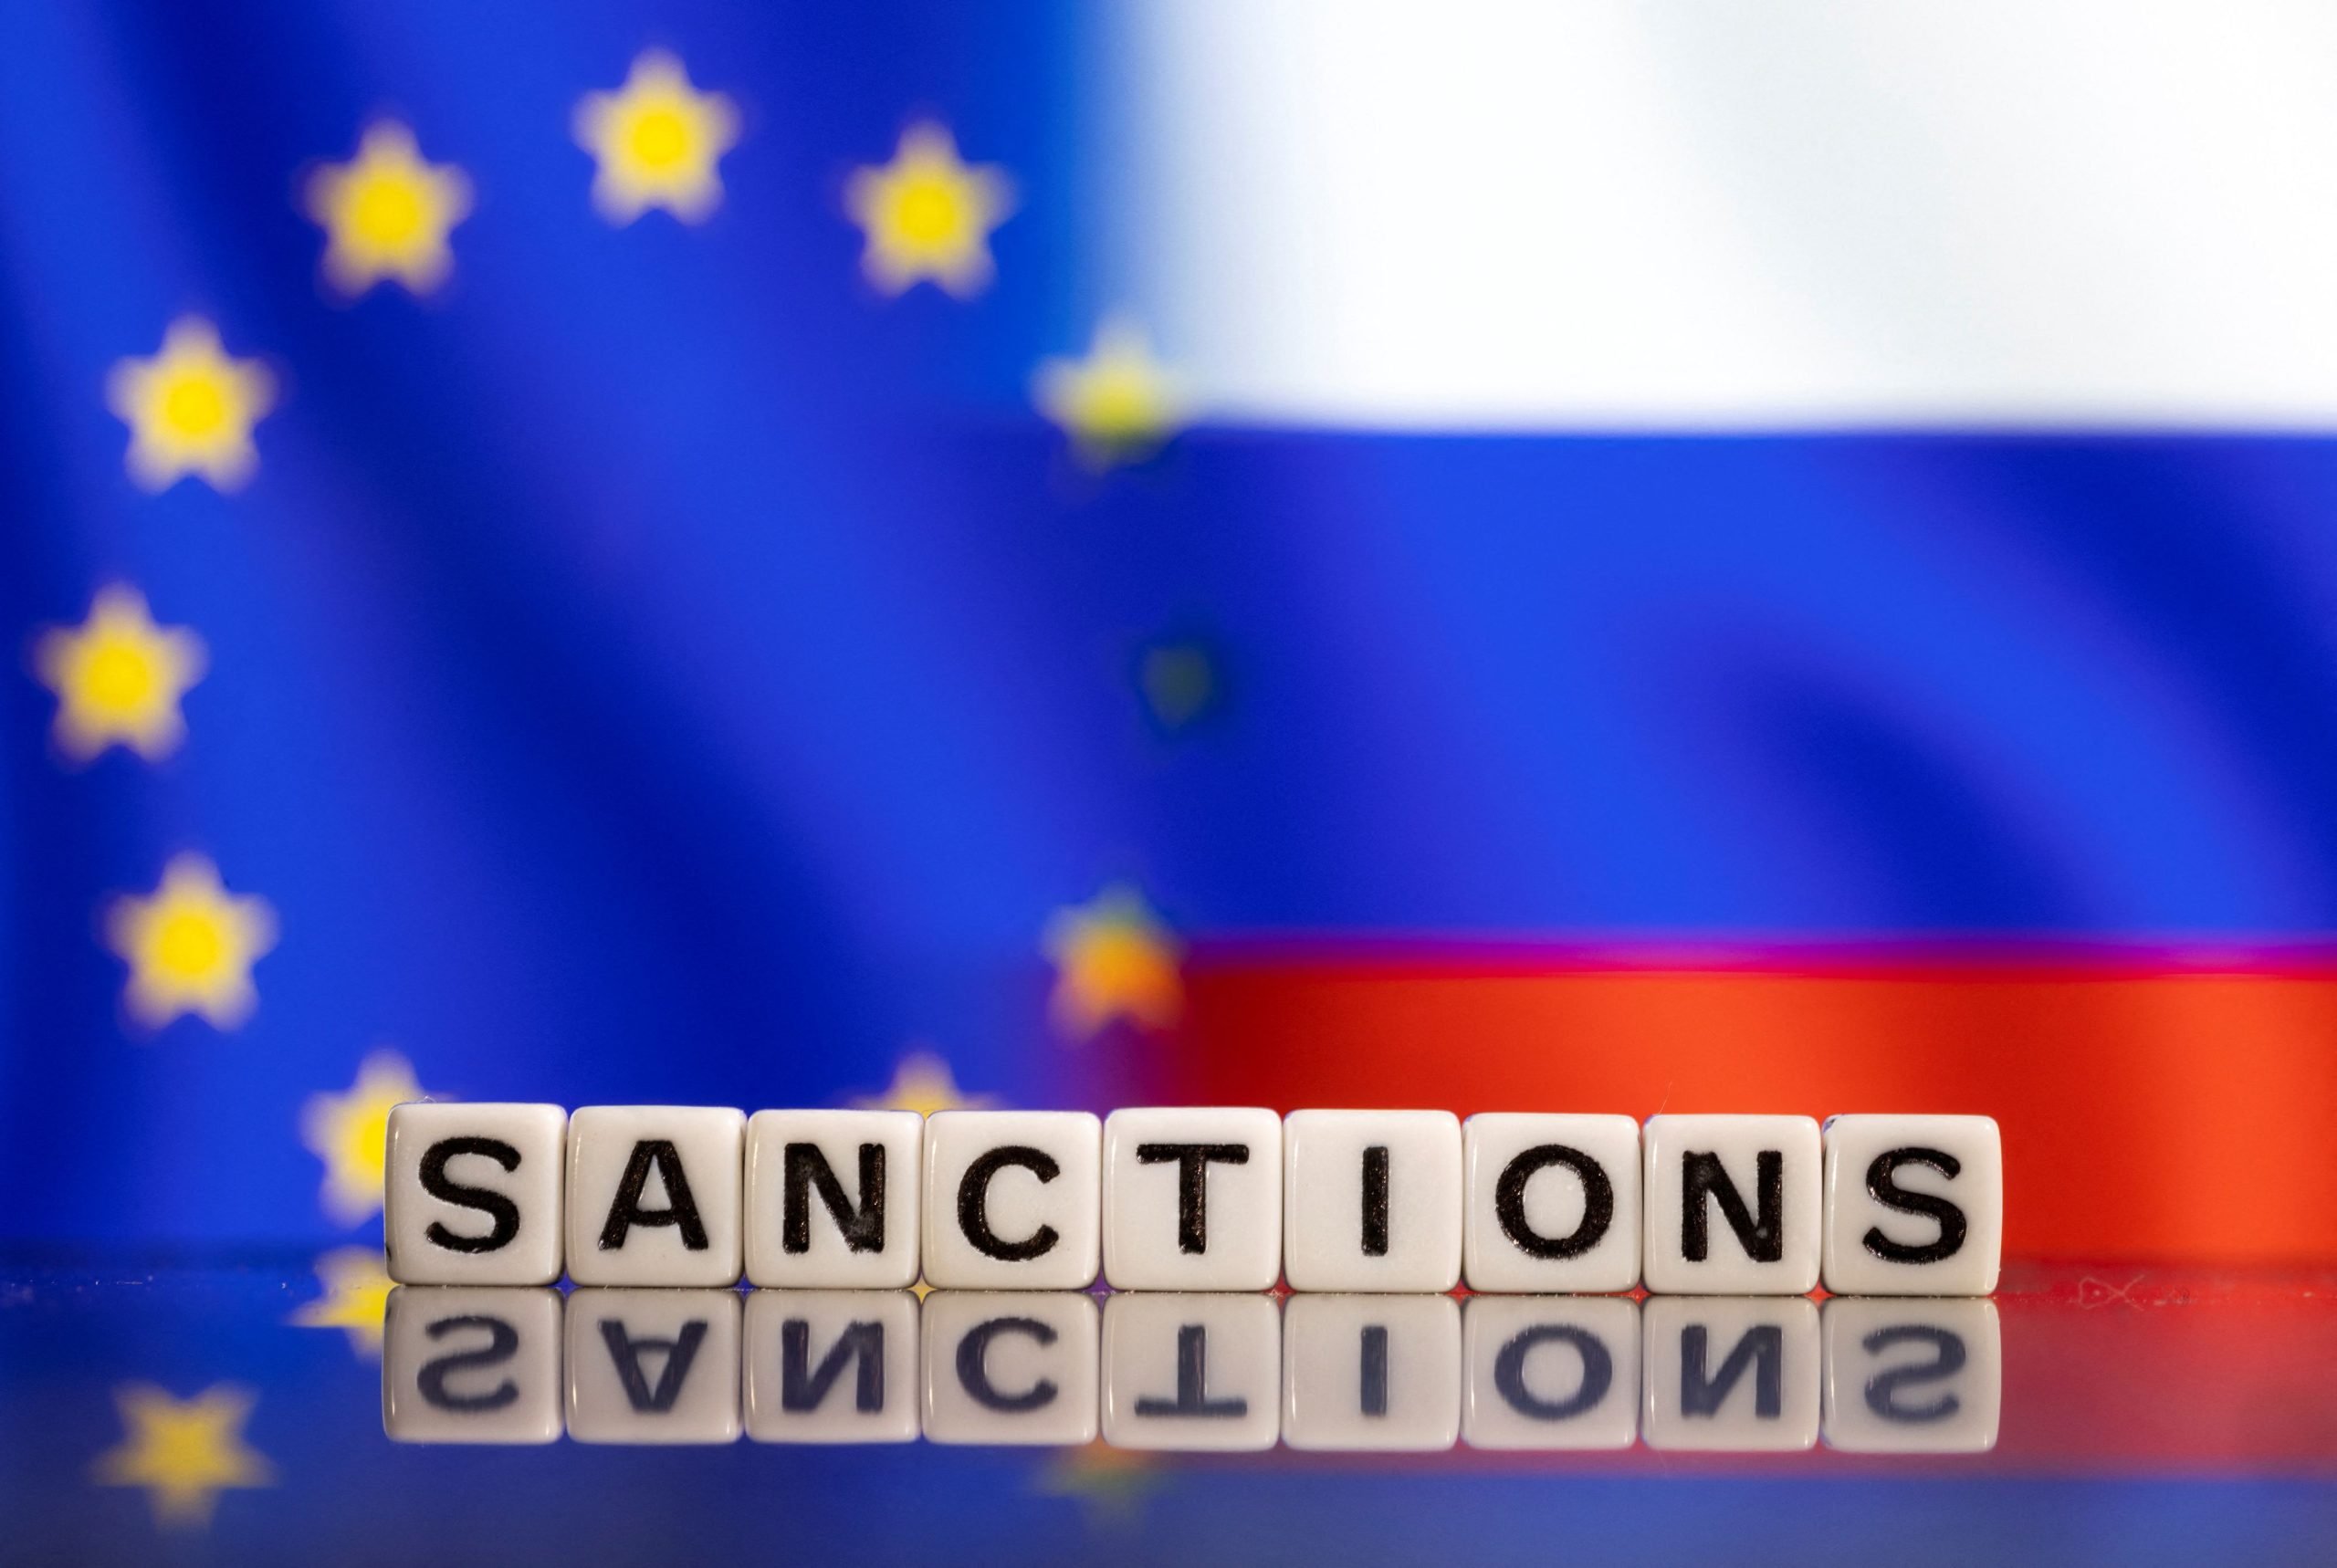  Încălcarea sancţiunilor impuse Rusiei de către statele membre UE ar putea fi considerată infracţiune